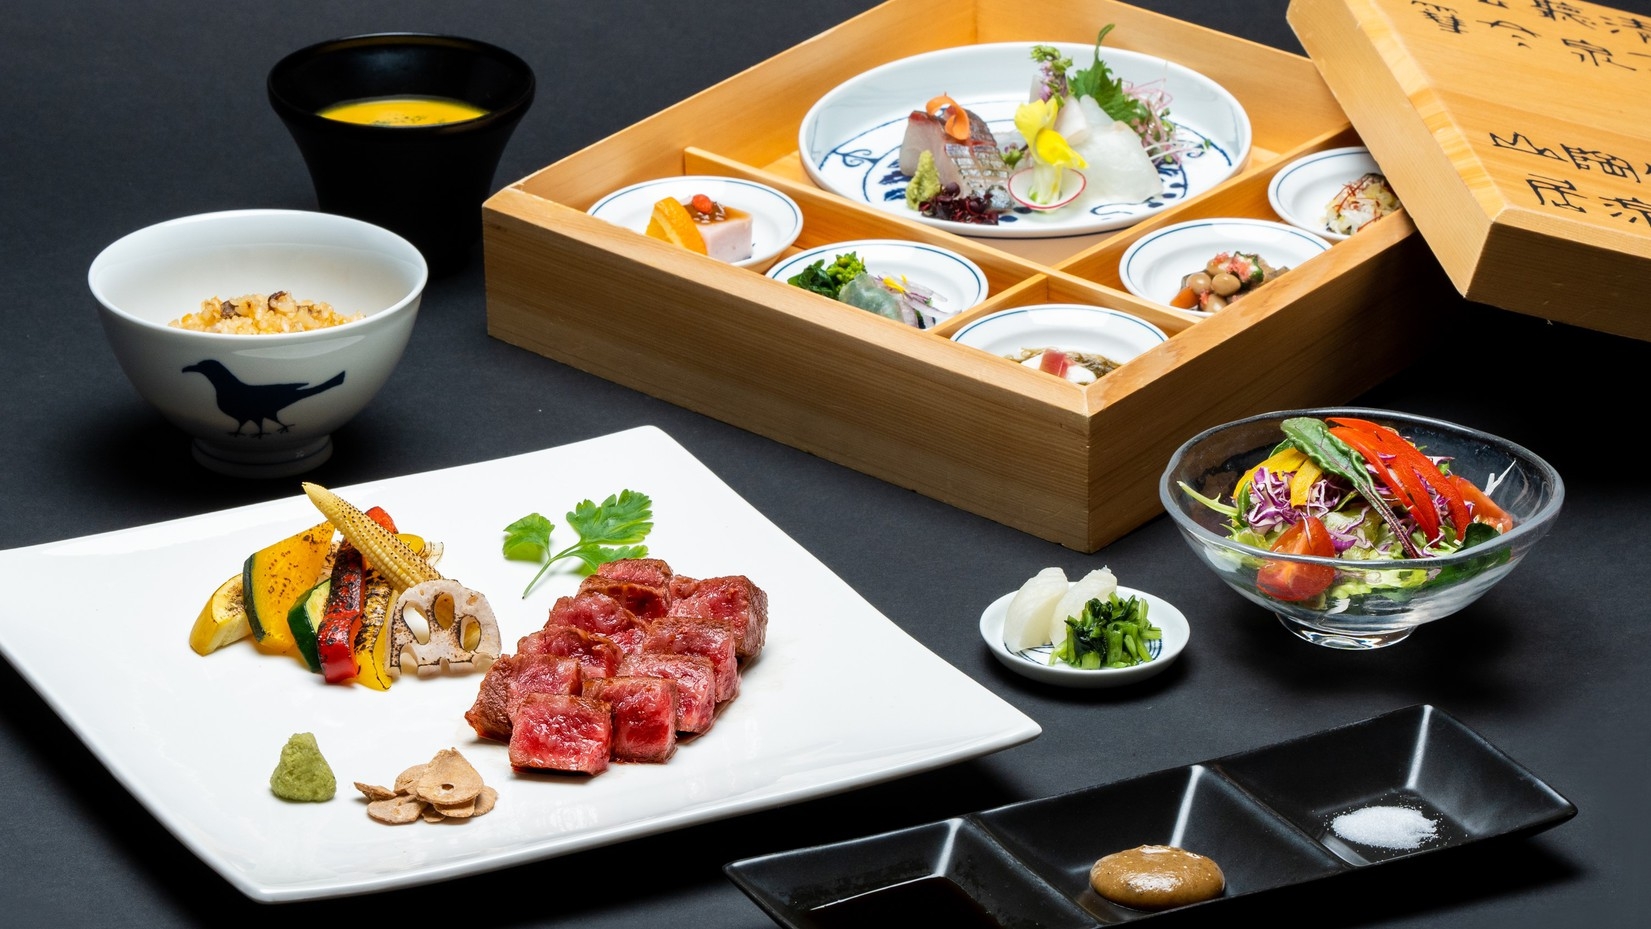 神戸ビーフの旨みと和食の彩りを堪能するステーキディナープラン